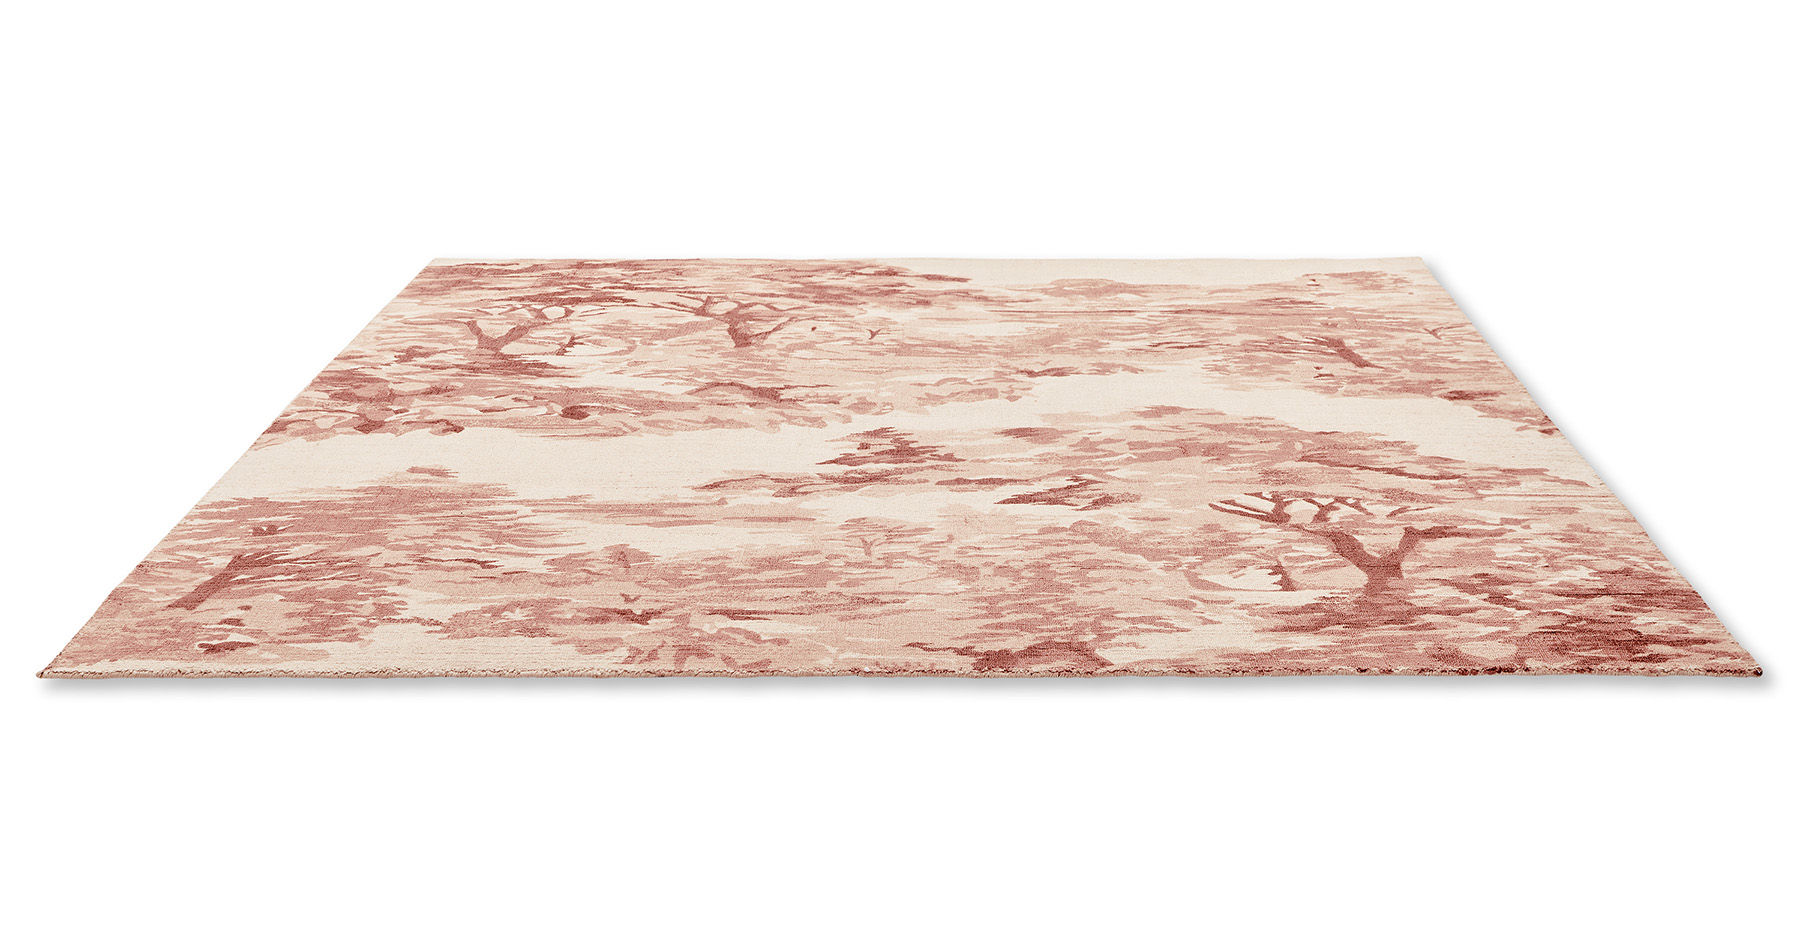 Landscape Light Pink Designer Rug ☞ Size: 8' 2" x 11' 6" (250 x 350 cm)